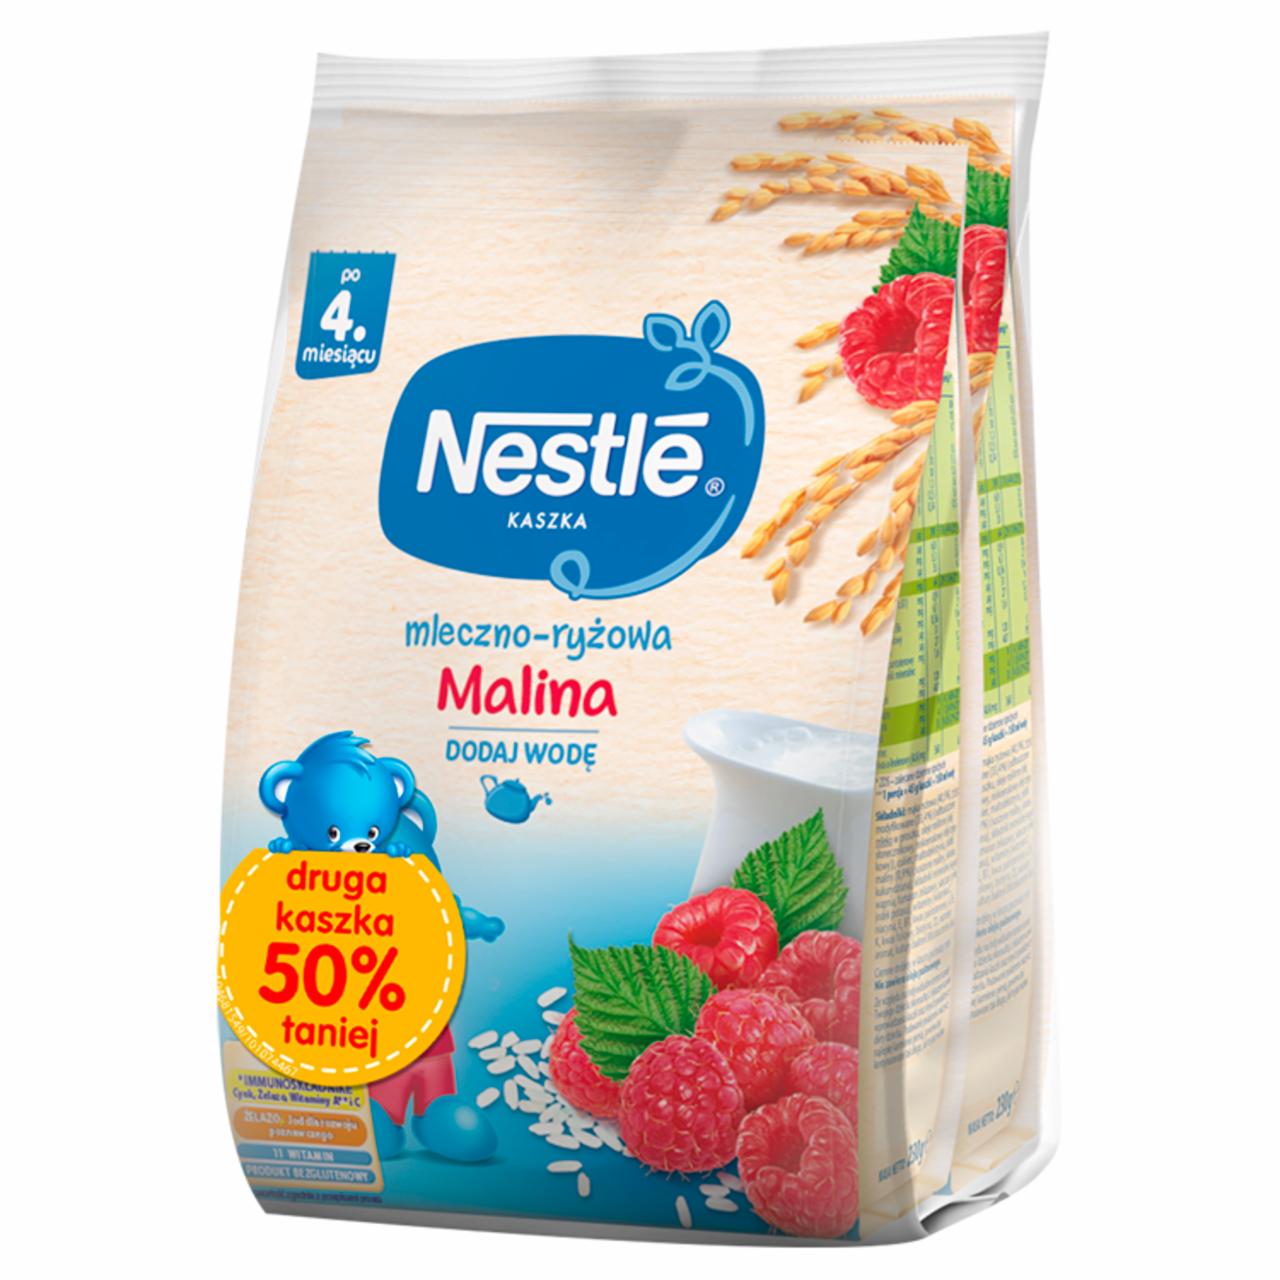 Zdjęcia - Nestlé Kaszka mleczno-ryżowa malina po 4. miesiącu 460 g (2 x 230 g)